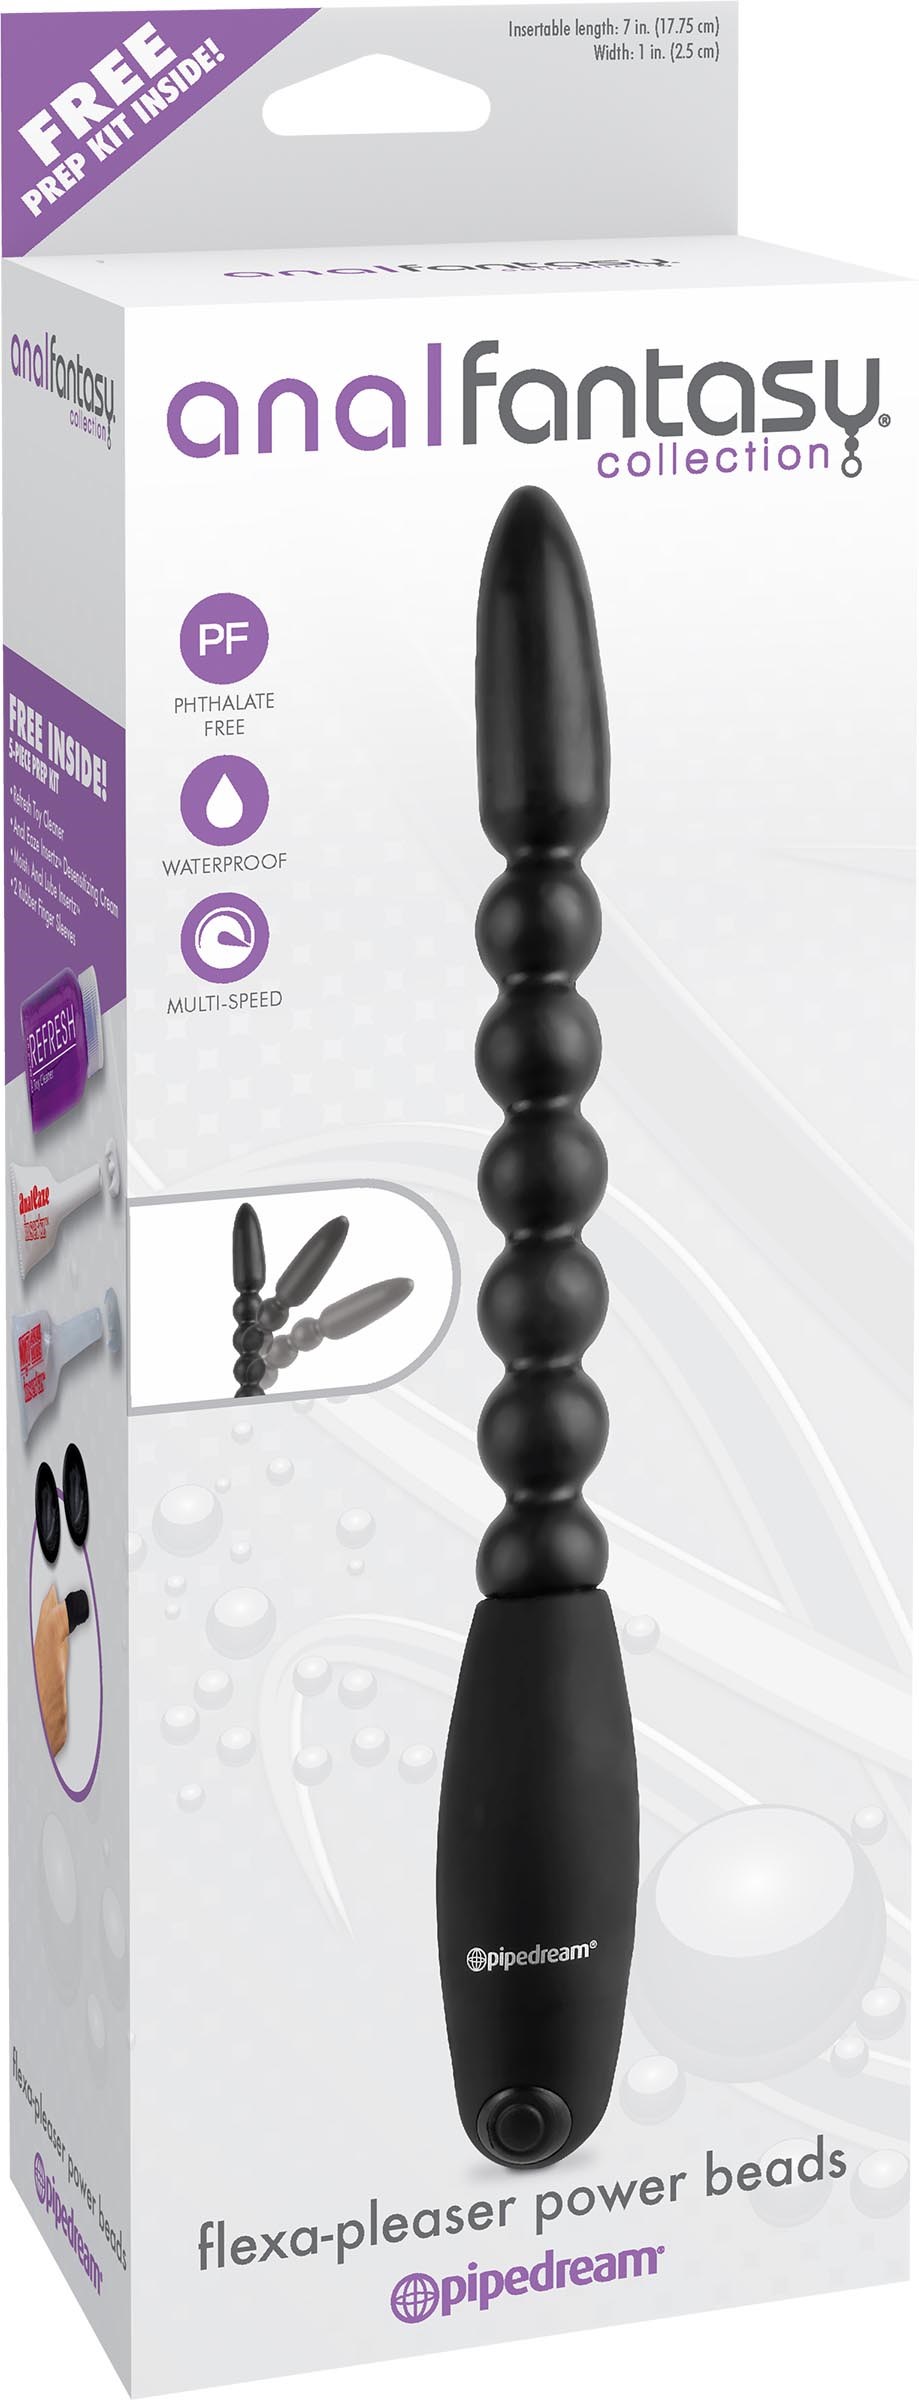 Flexa-Pleaser Power Beads